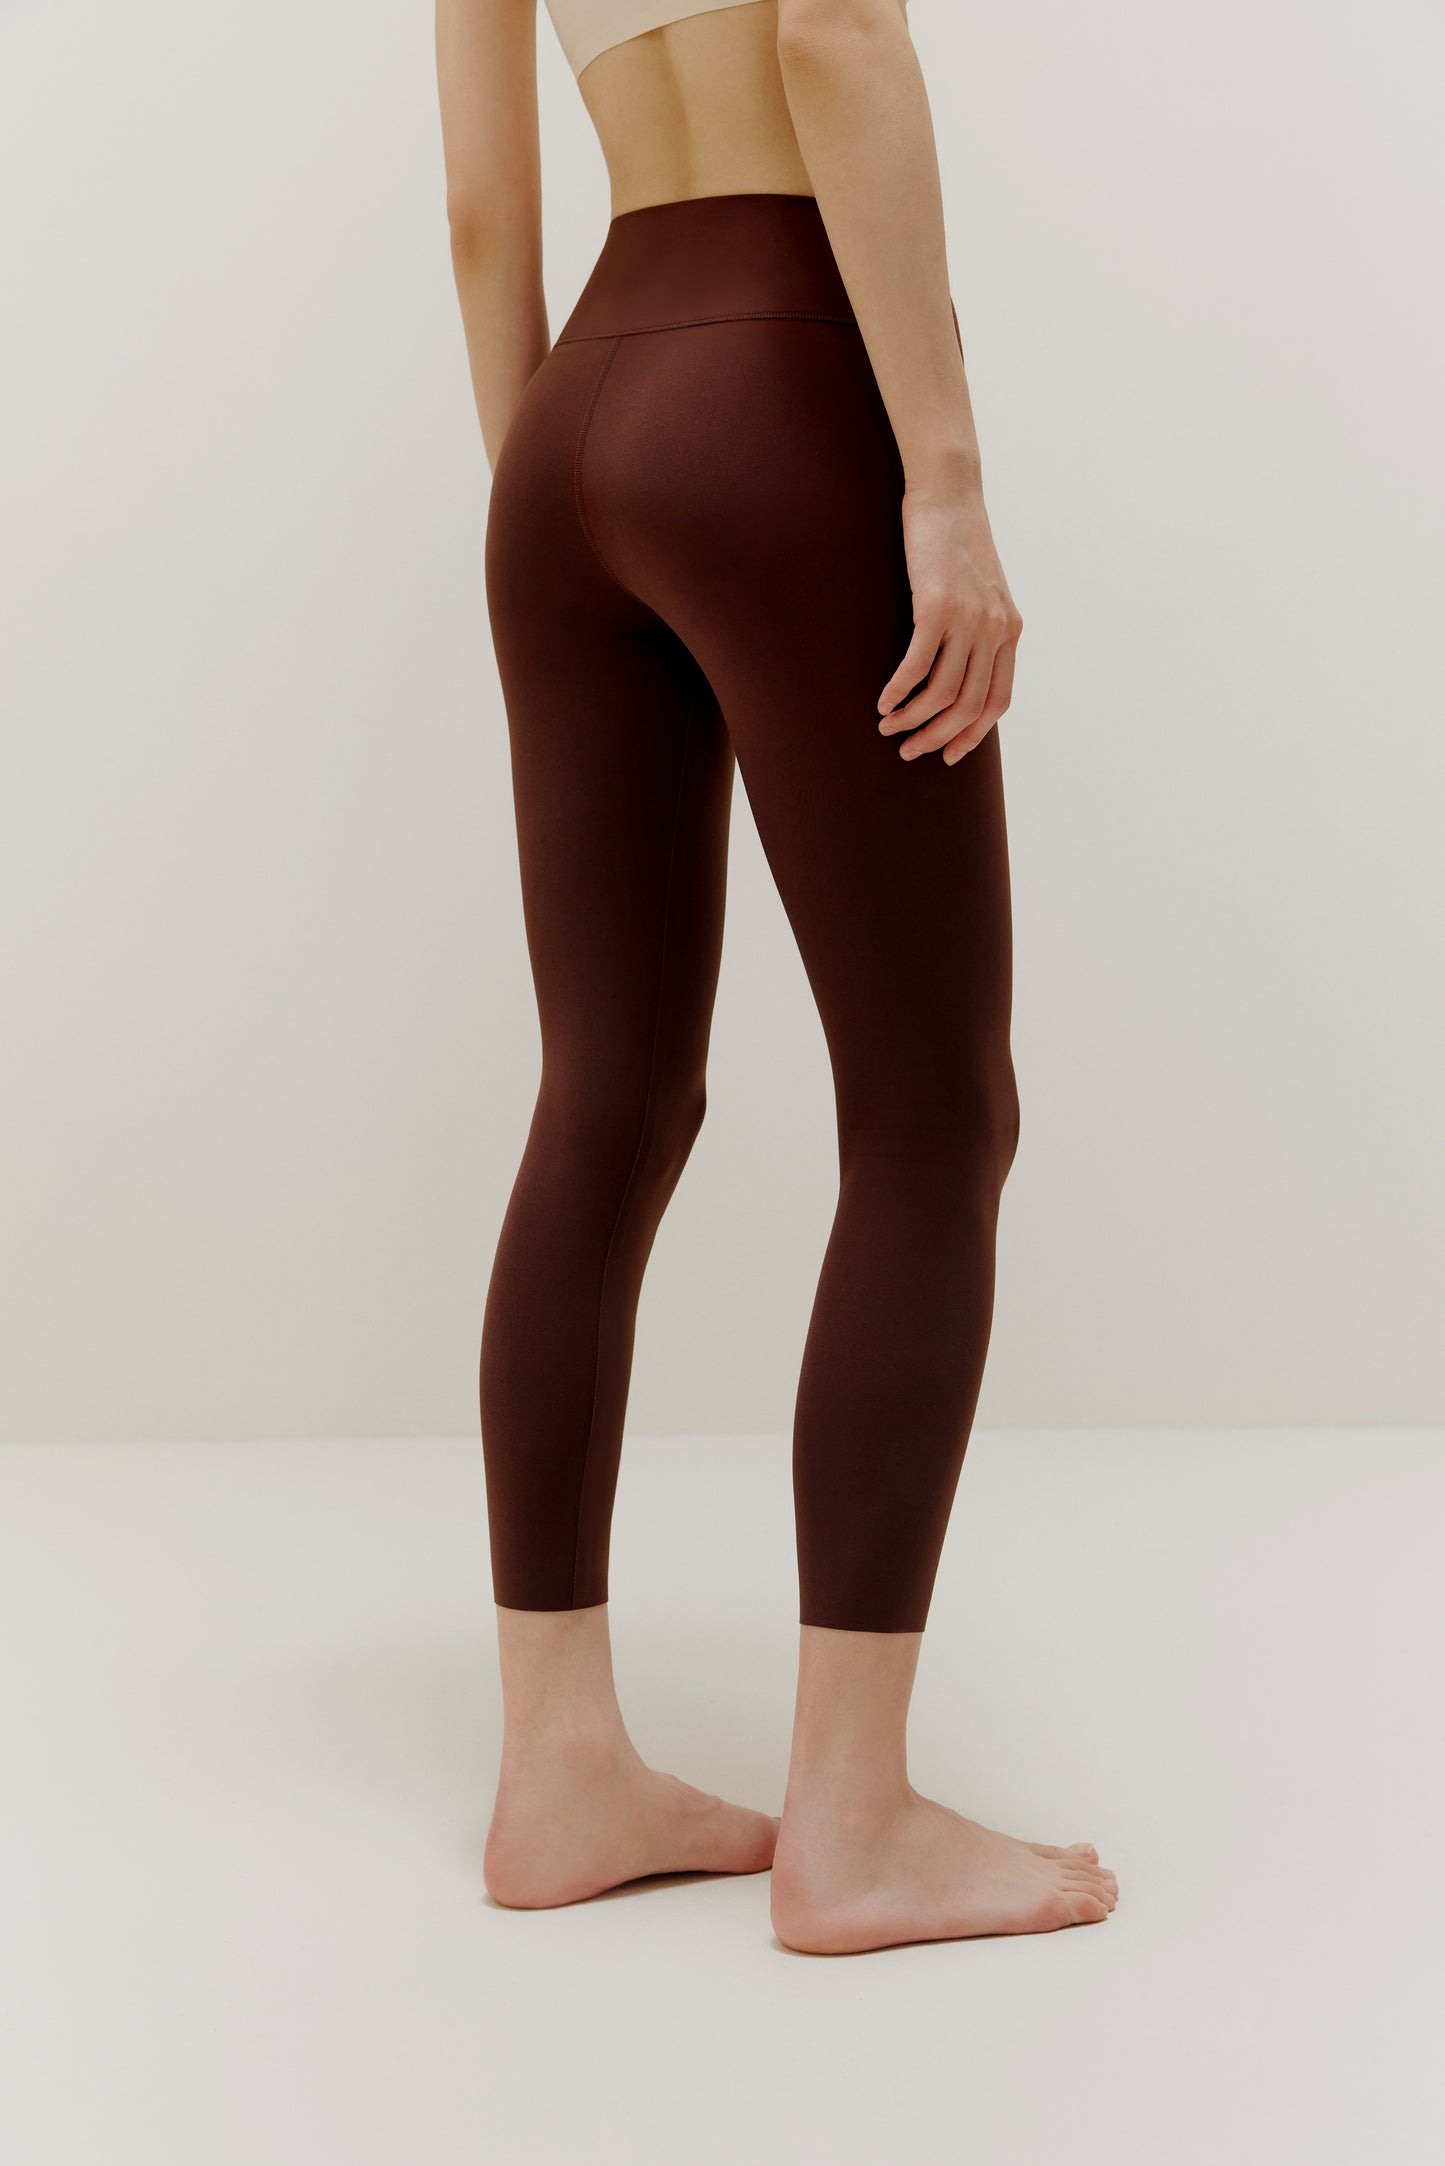 Back side view of woman wearing brown leggings